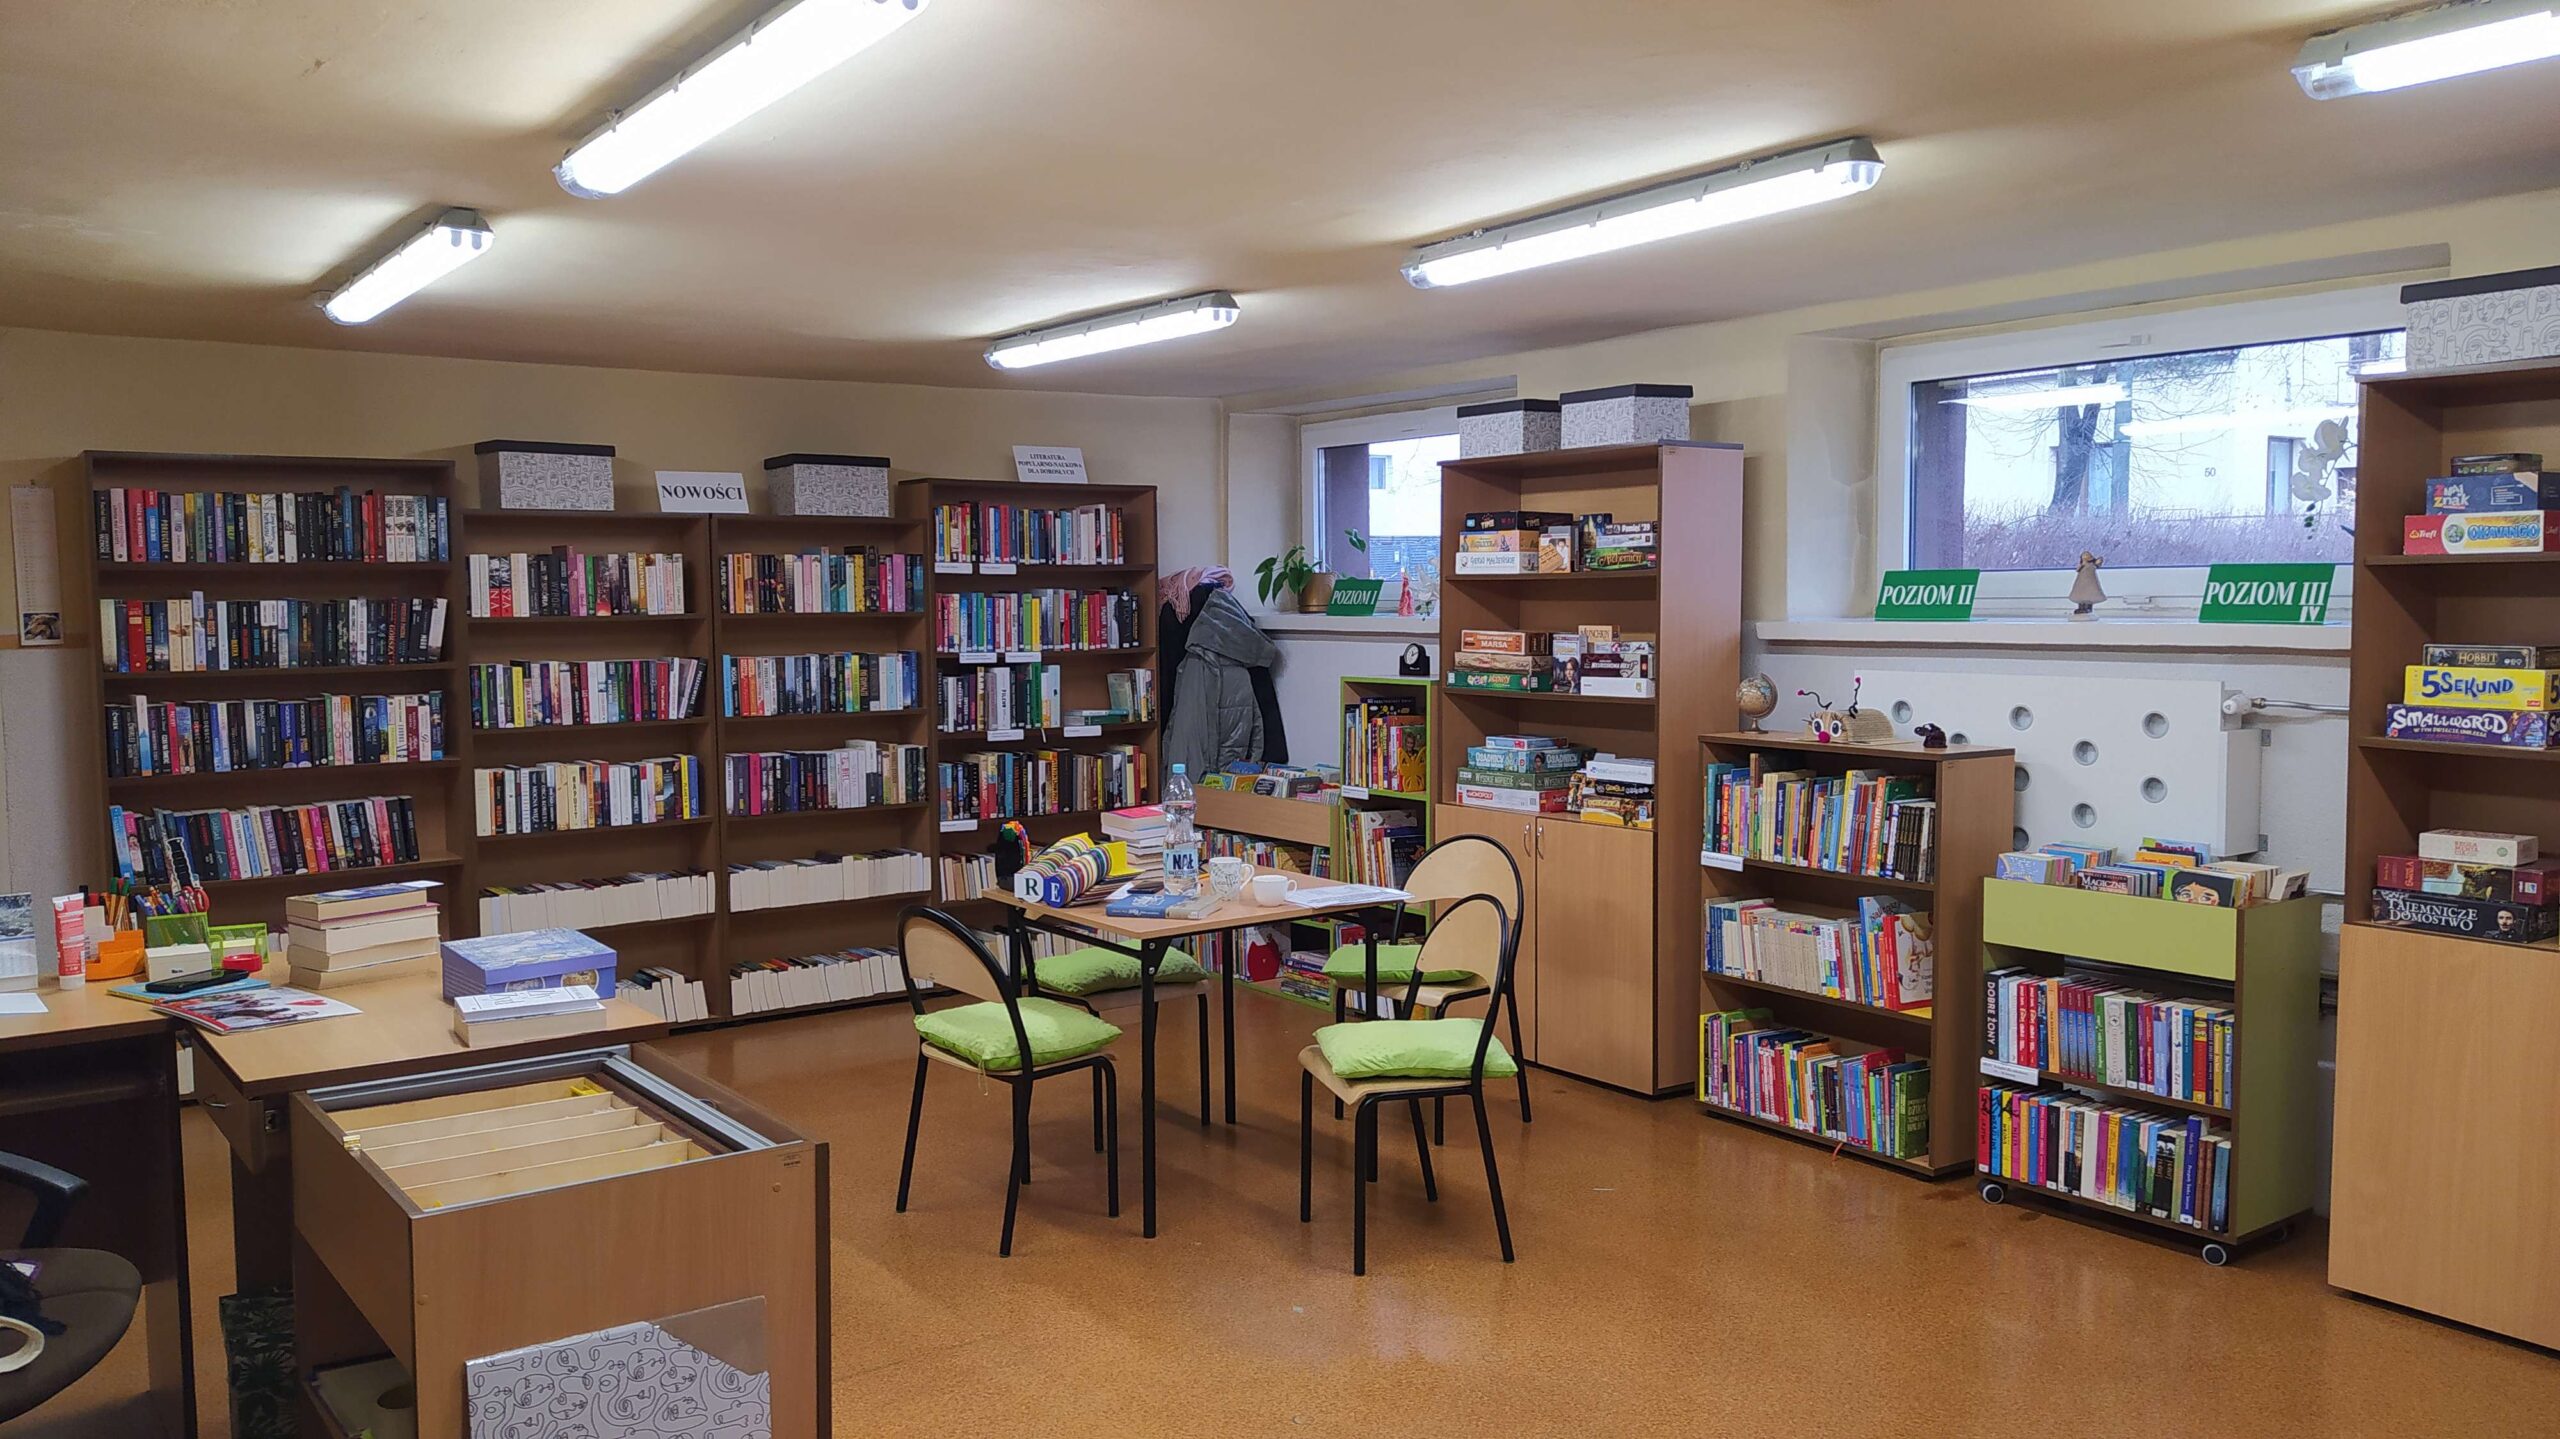 Filia 15 Biblioteki Publicznej w Częstochowie tymczasowo zmienia siedzibę 7